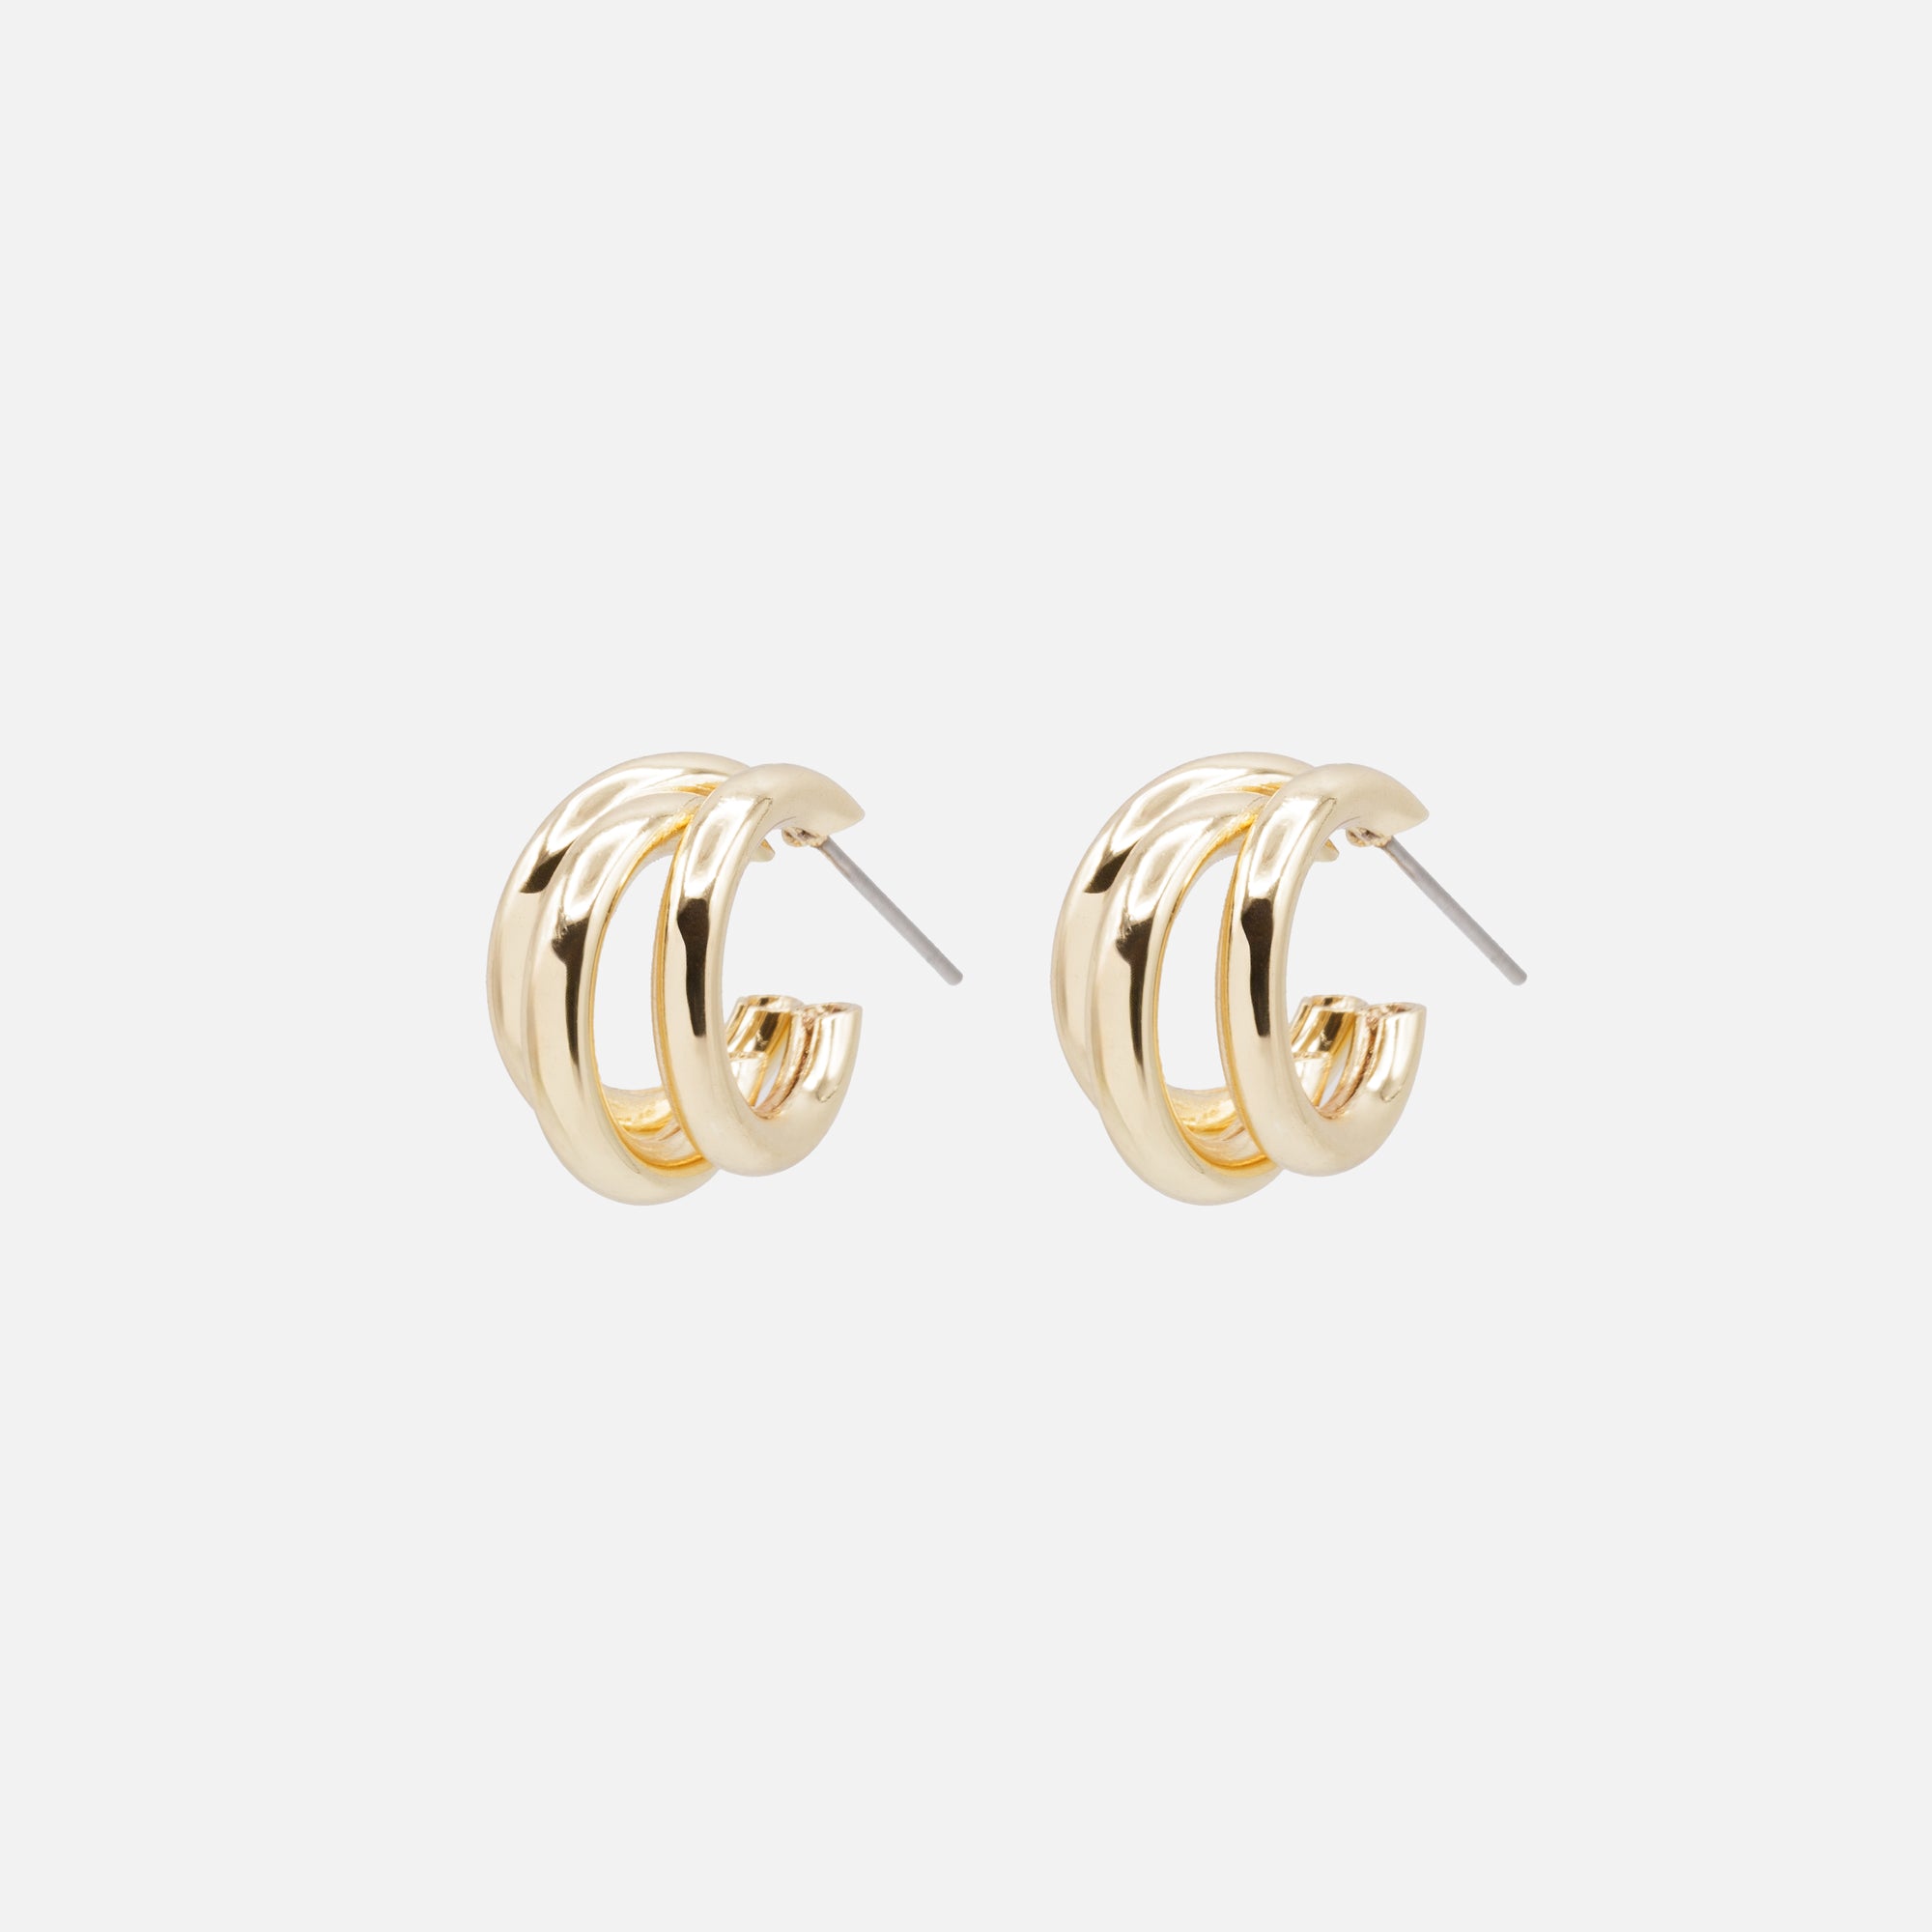 Triple gold hoop earrings